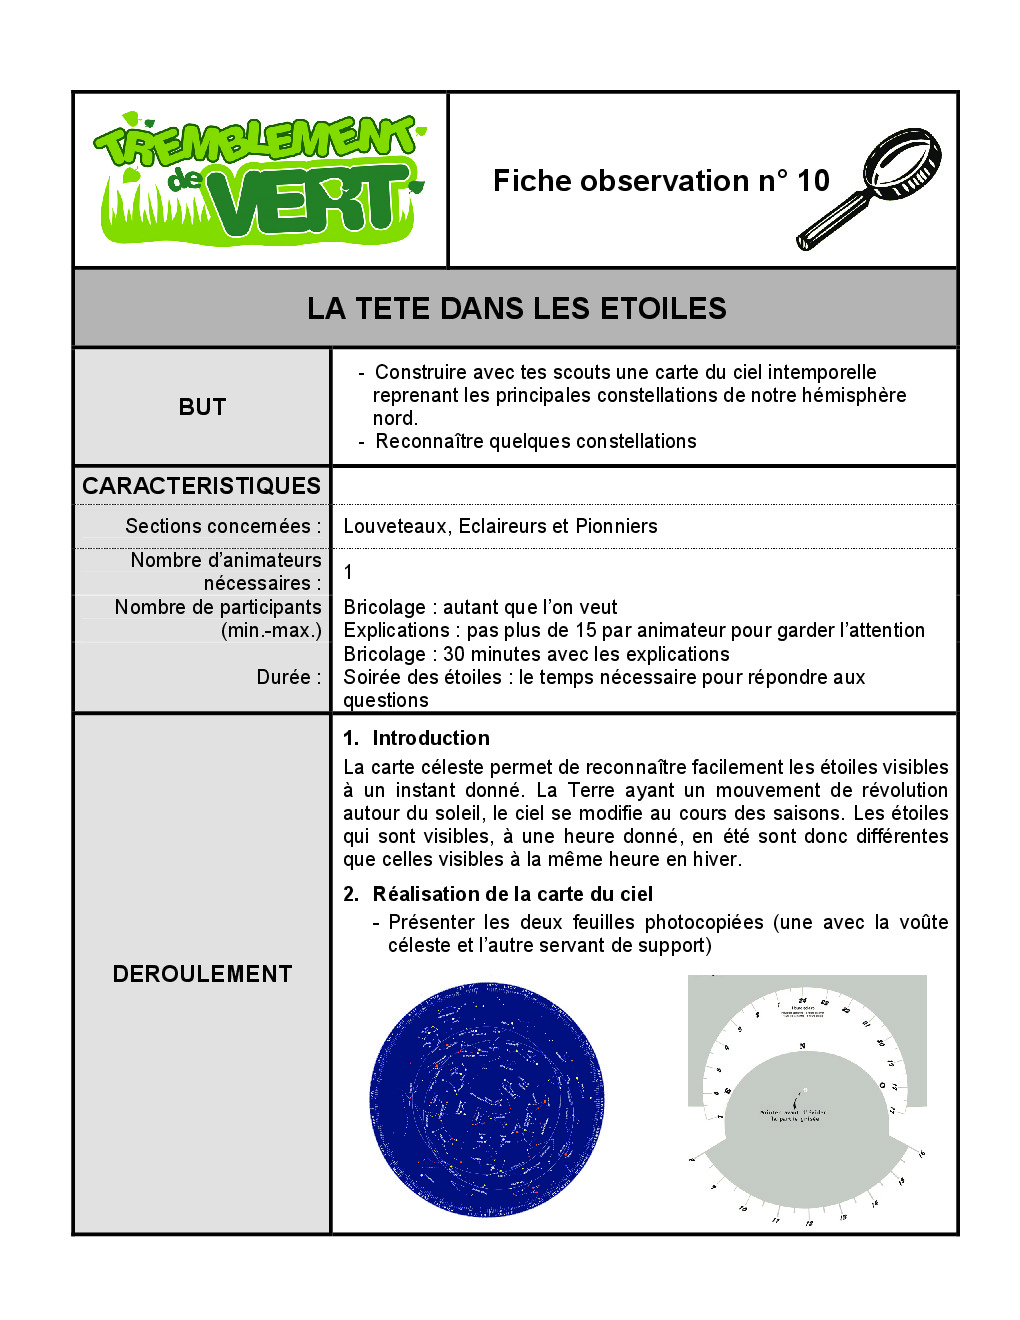 FT_TV_OBS_10_la_tete_dans_les_etoiles.pdf